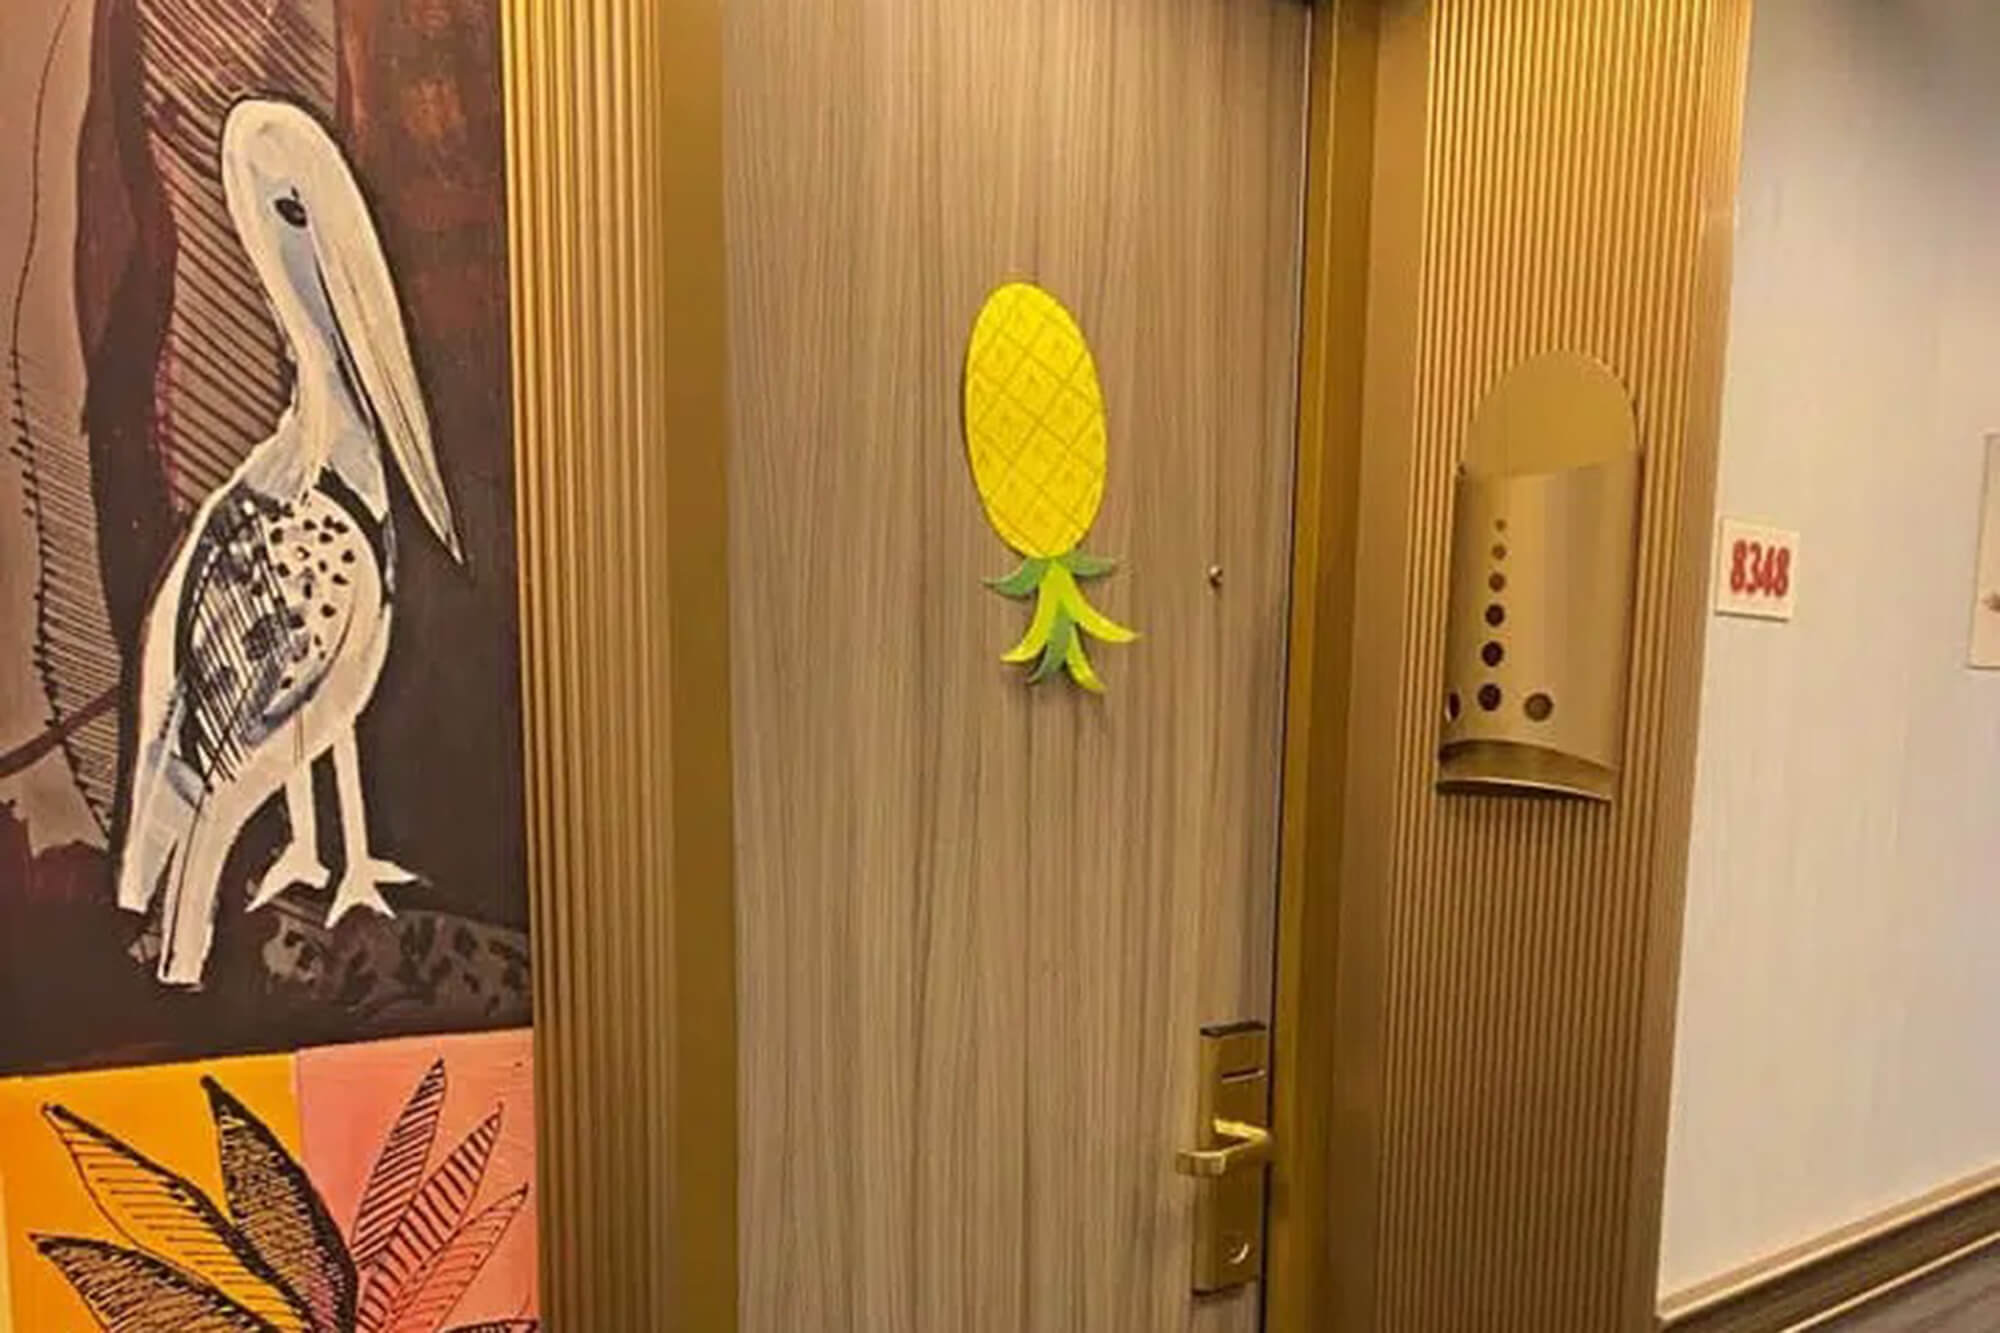 upside down pineapple on a door 